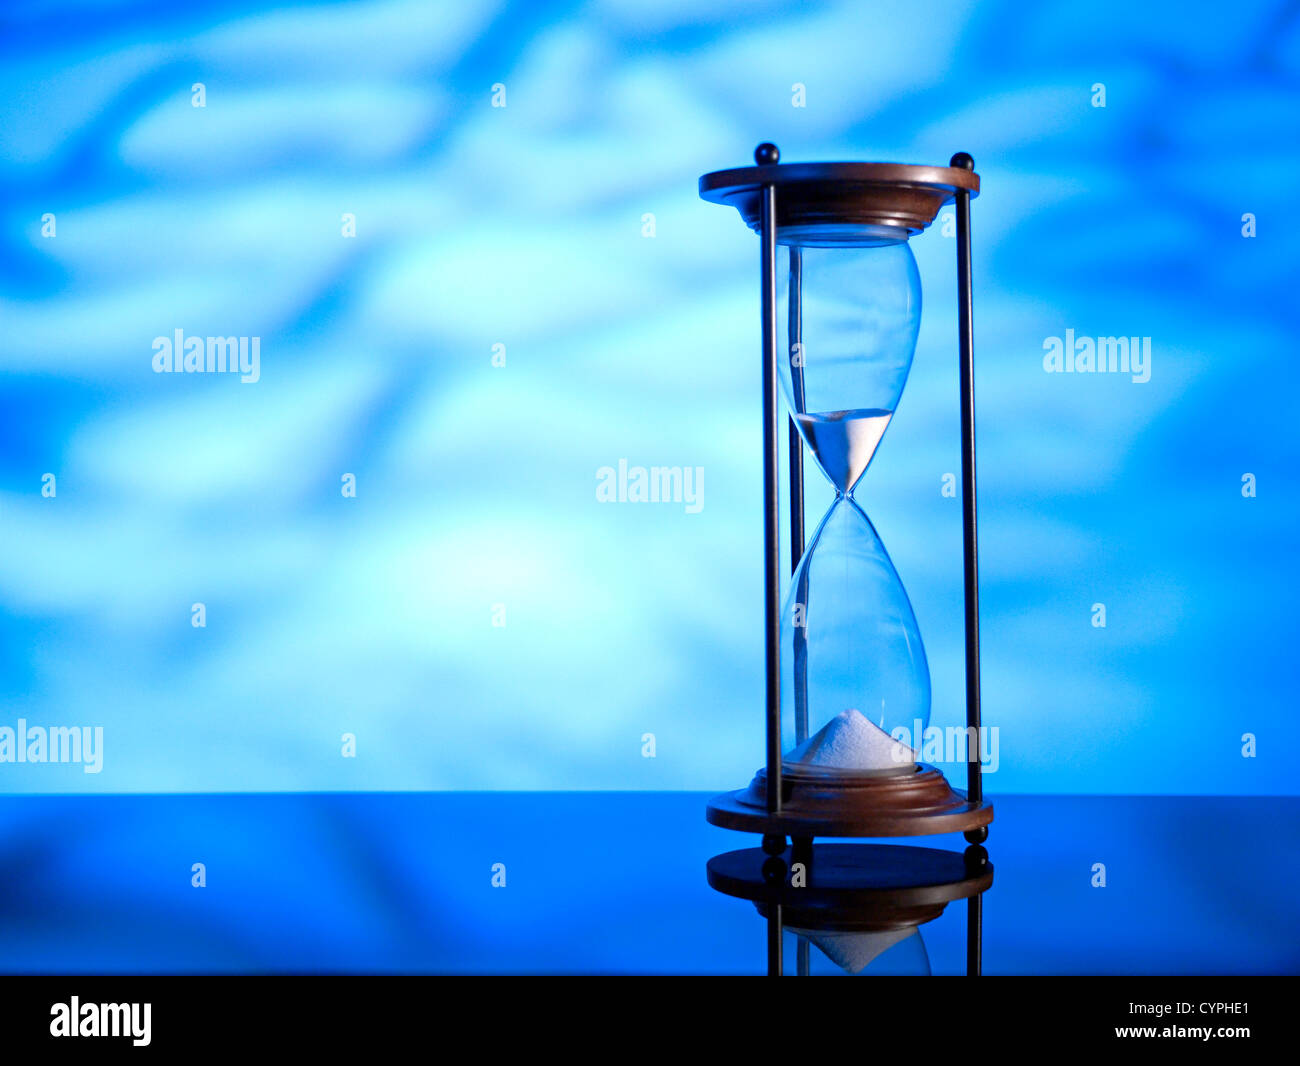 Un reloj de arena de cristal clásico con arena que fluye hacia abajo se encuentra prominentemente en el foco contra un telón de fondo azul vivo, reflejando el concepto de pasar el tiempo. Foto de stock